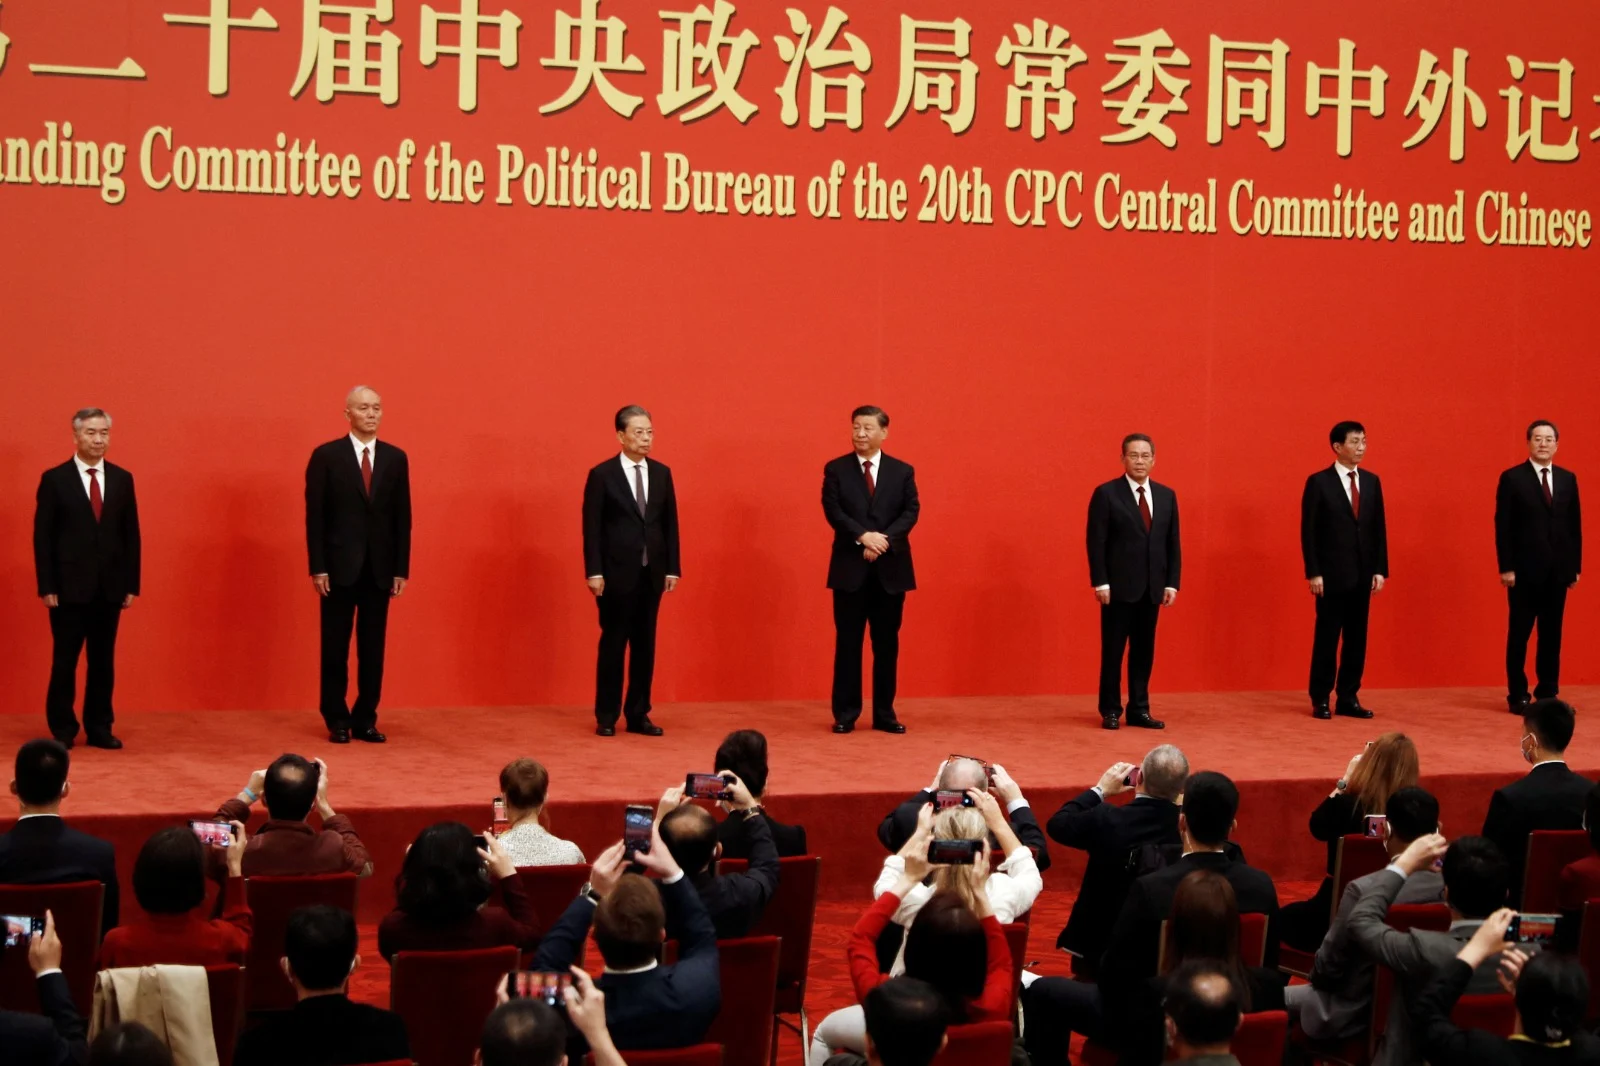 חברי הוועדה המתמדת של הפוליטביורו בסין